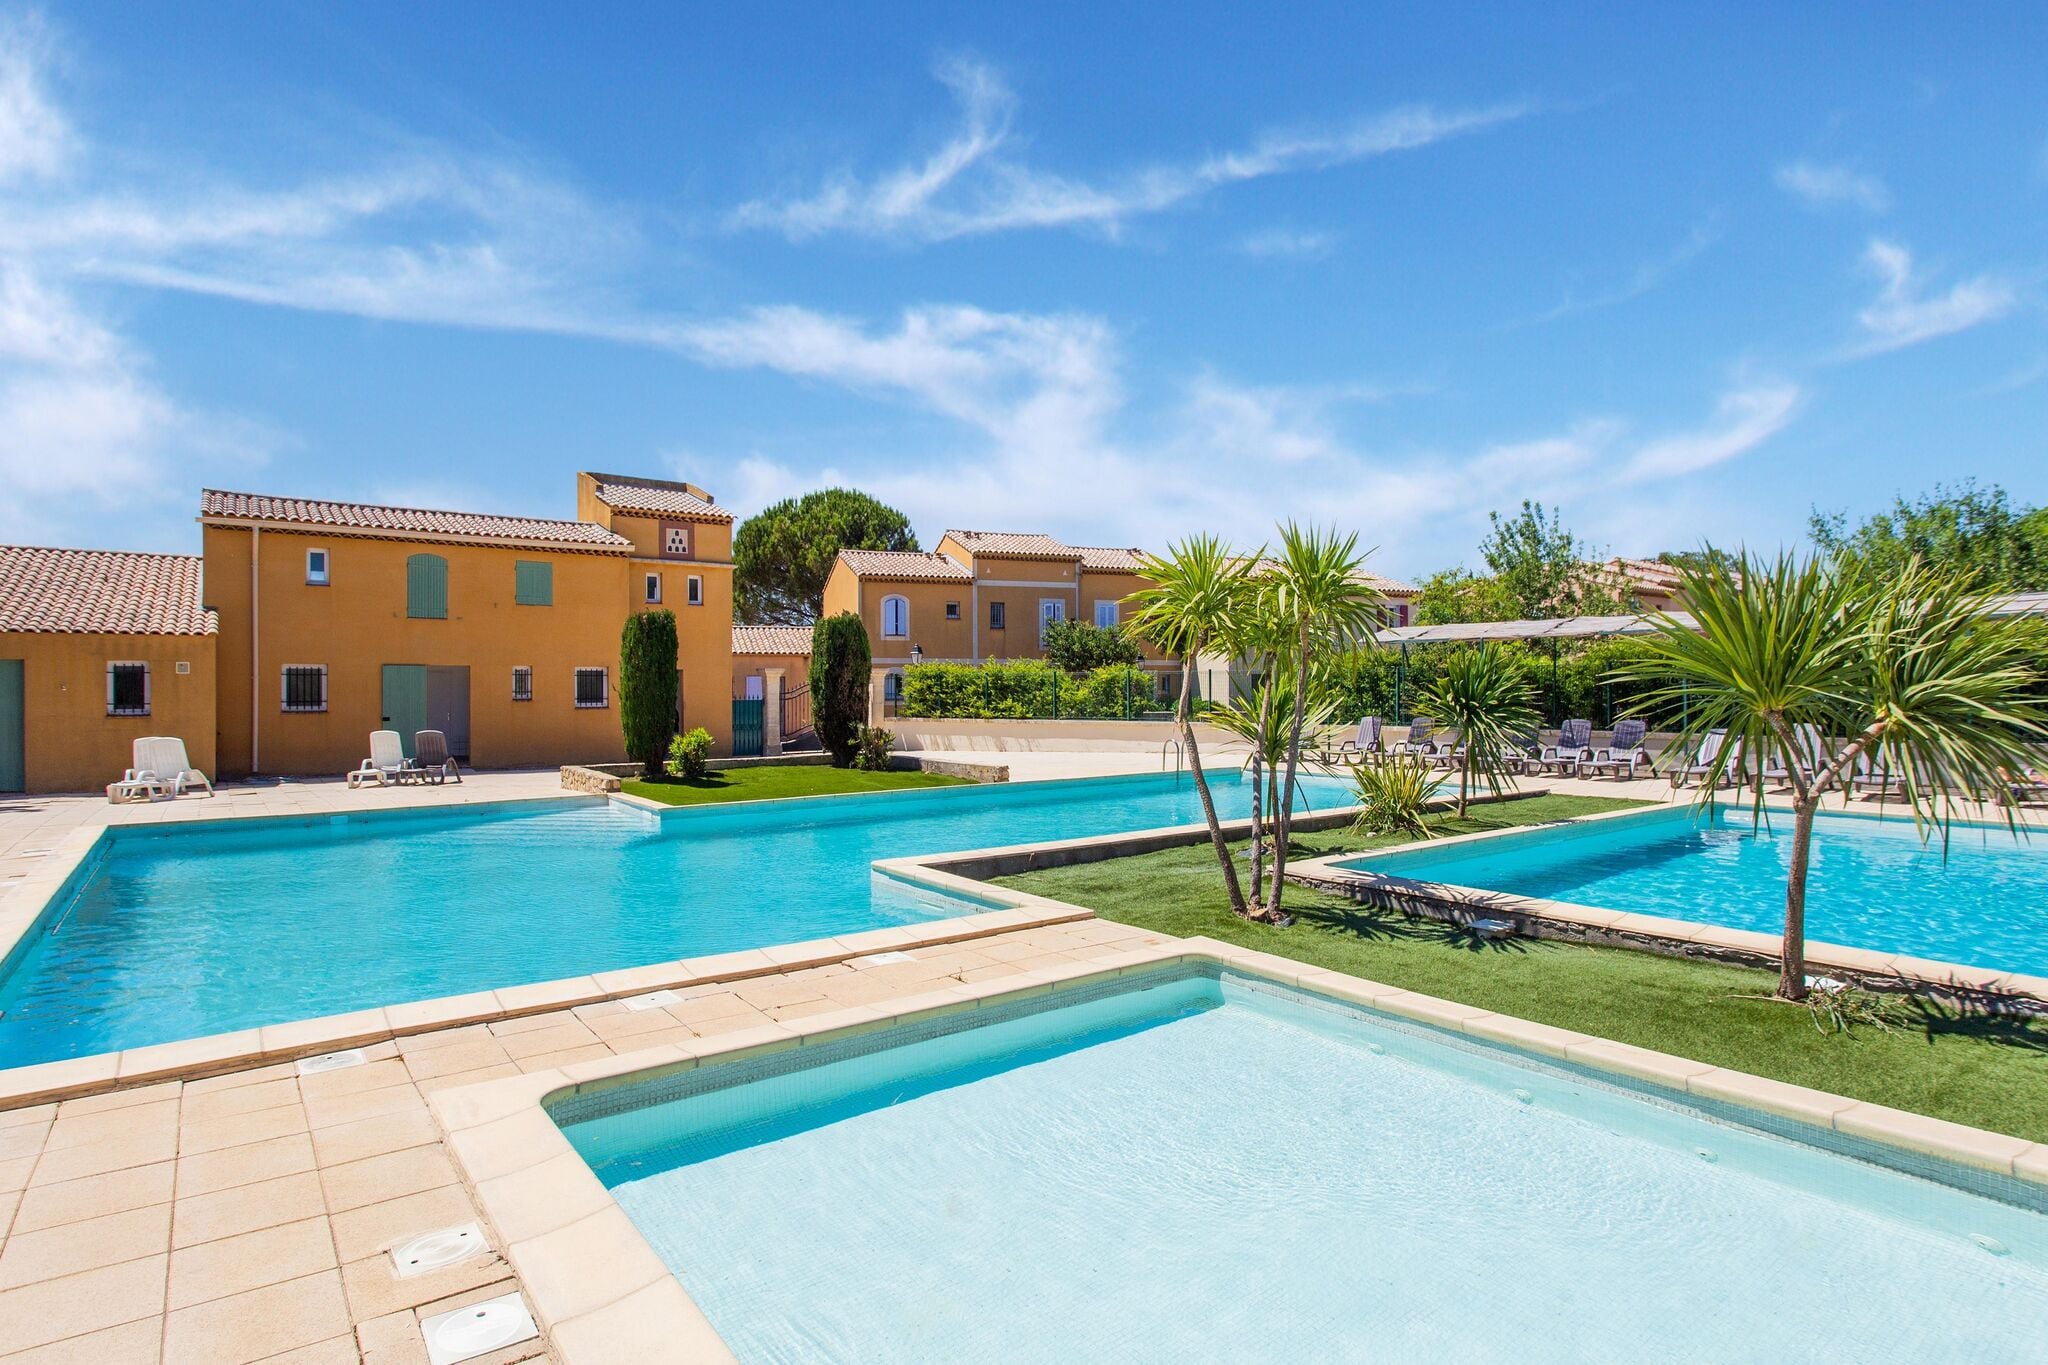 Vakantiehuis in de buurt van Arles met groot zwembad en tuin